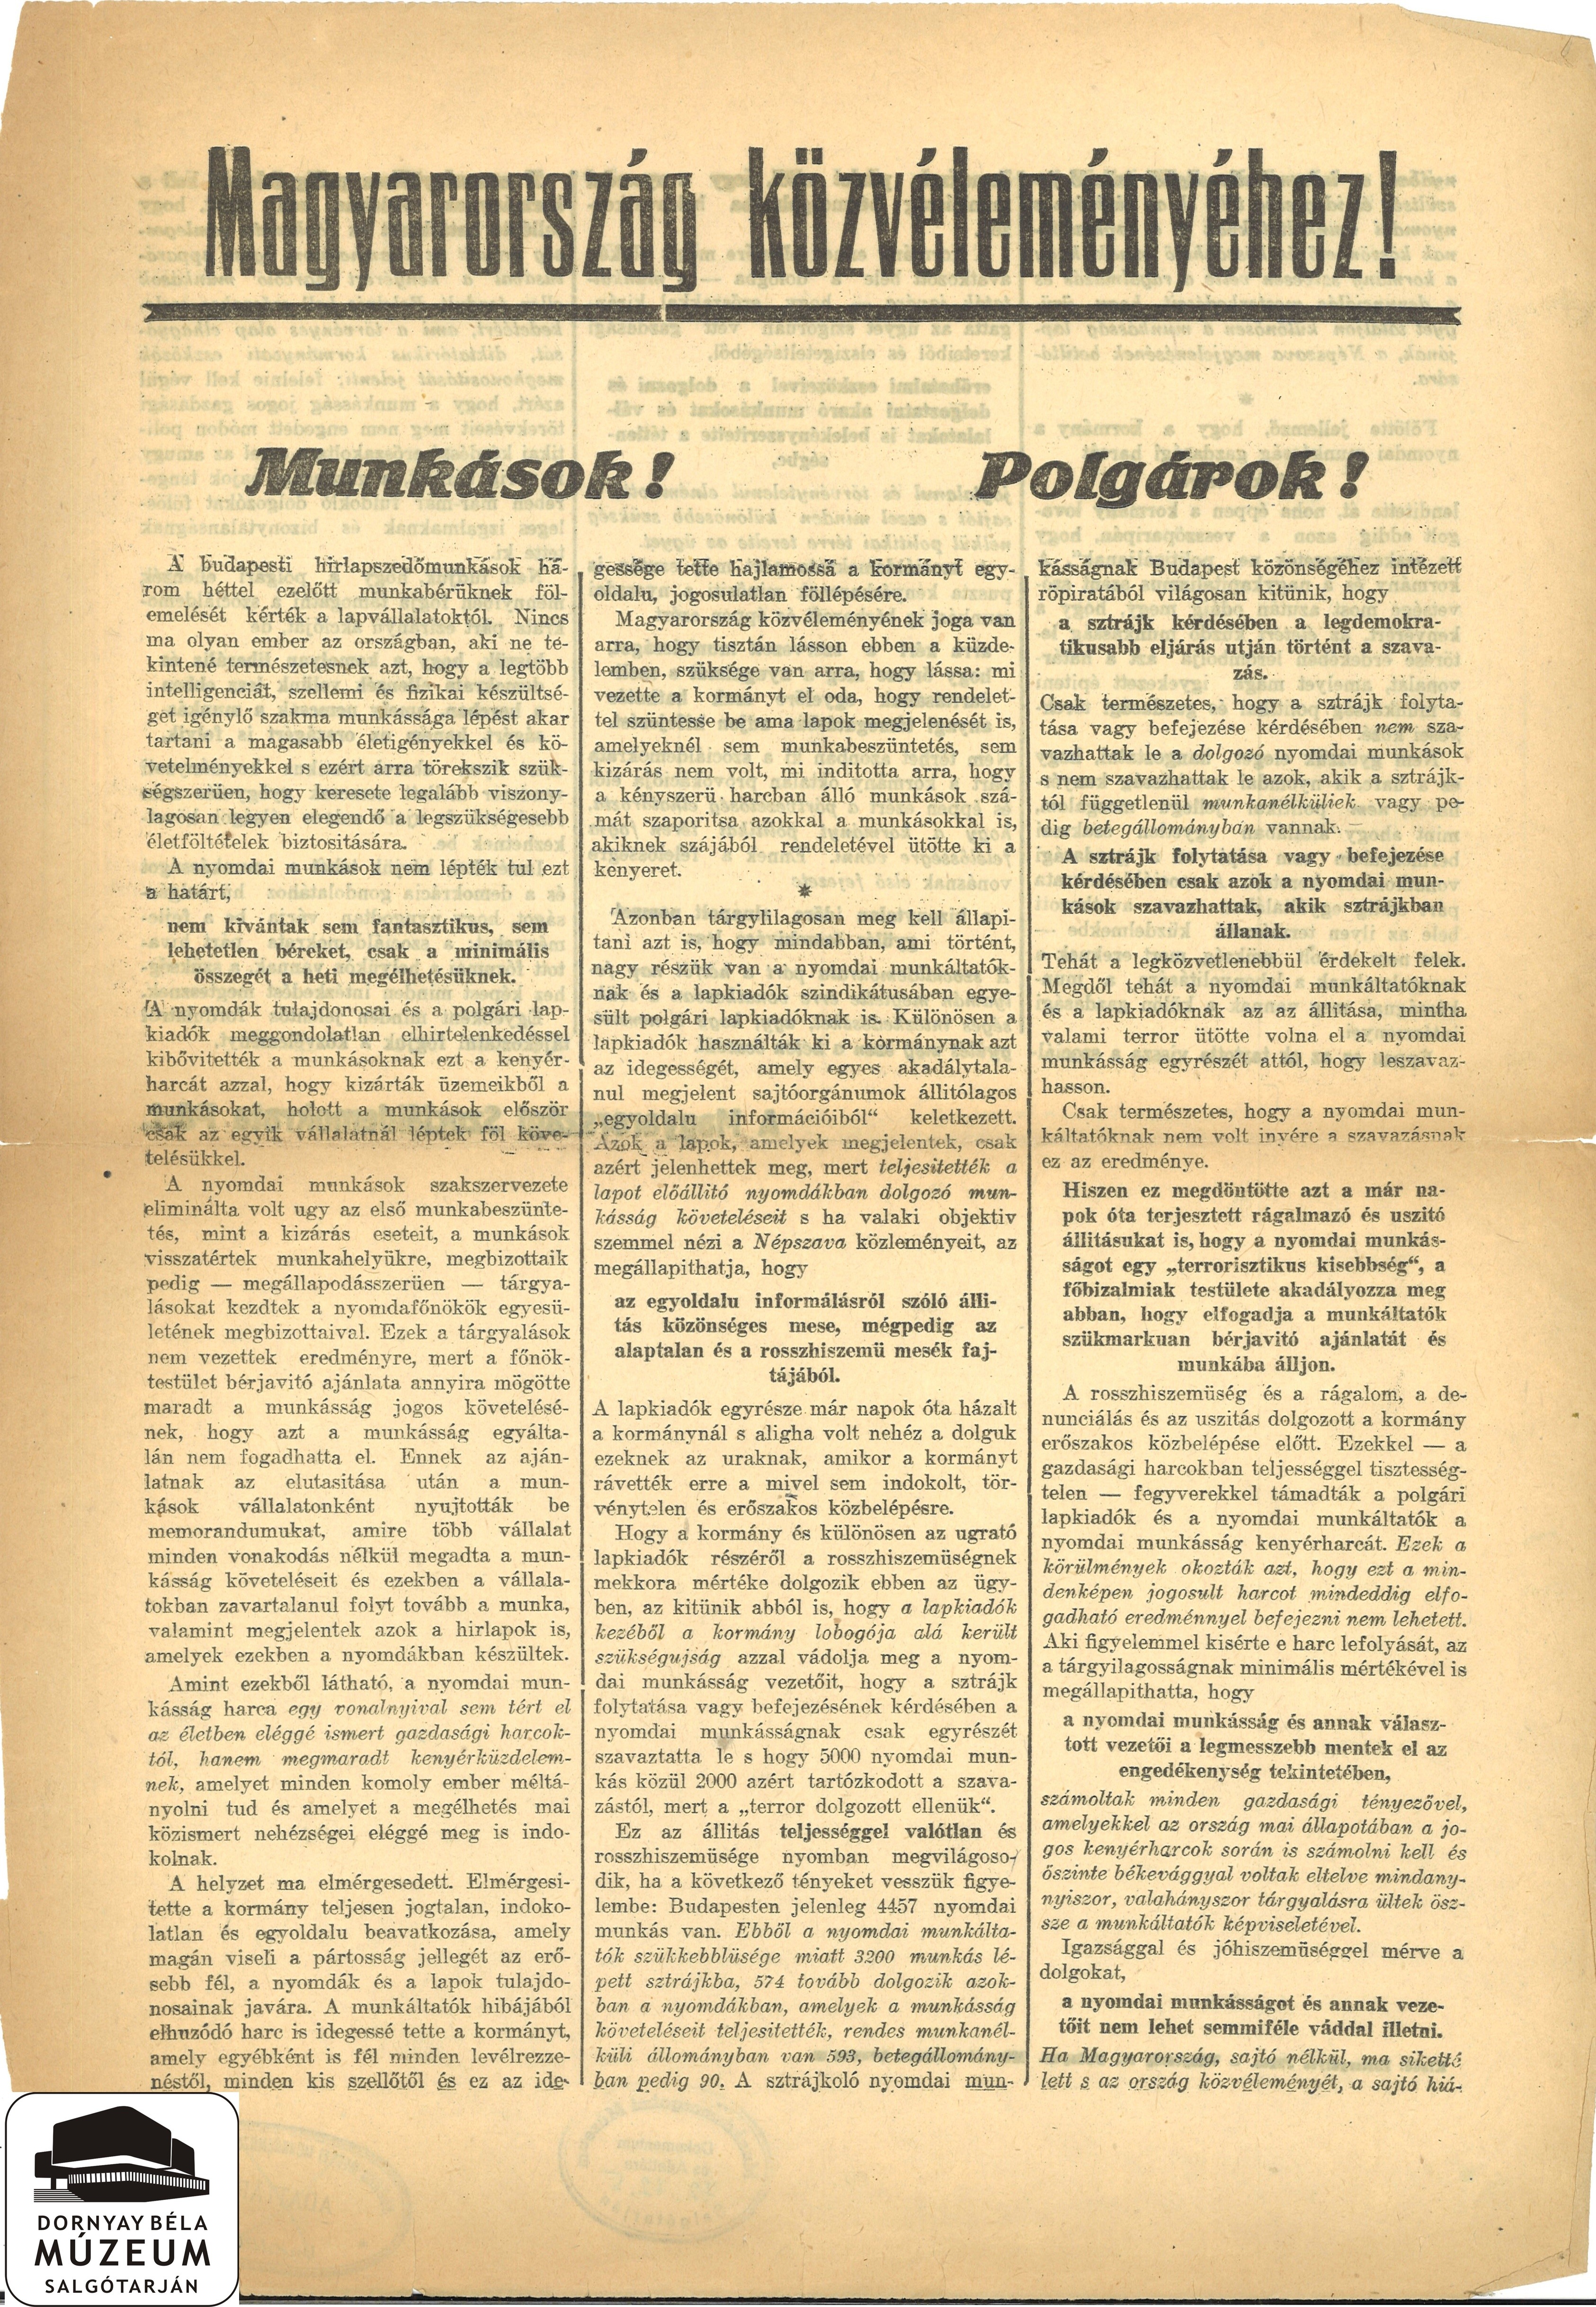 A Szociáldemokrata Párt felhívása Magyarország Közvéleményéhez (Dornyay Béla Múzeum, Salgótarján CC BY-NC-SA)